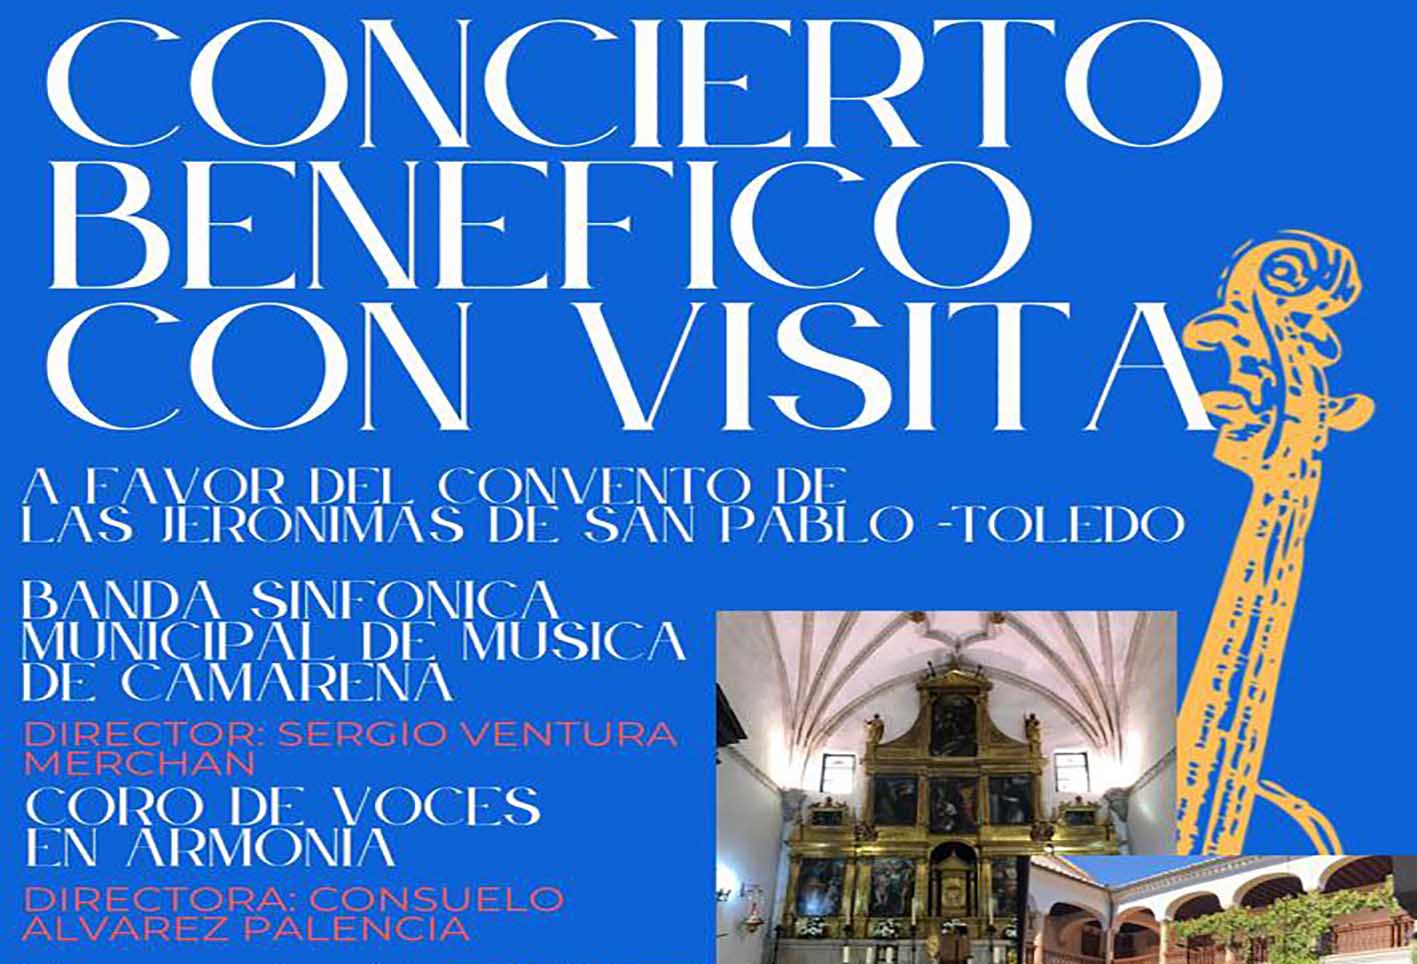 Cartel del concierto del 5 de mayo por el convento de San Pablo de Toledo